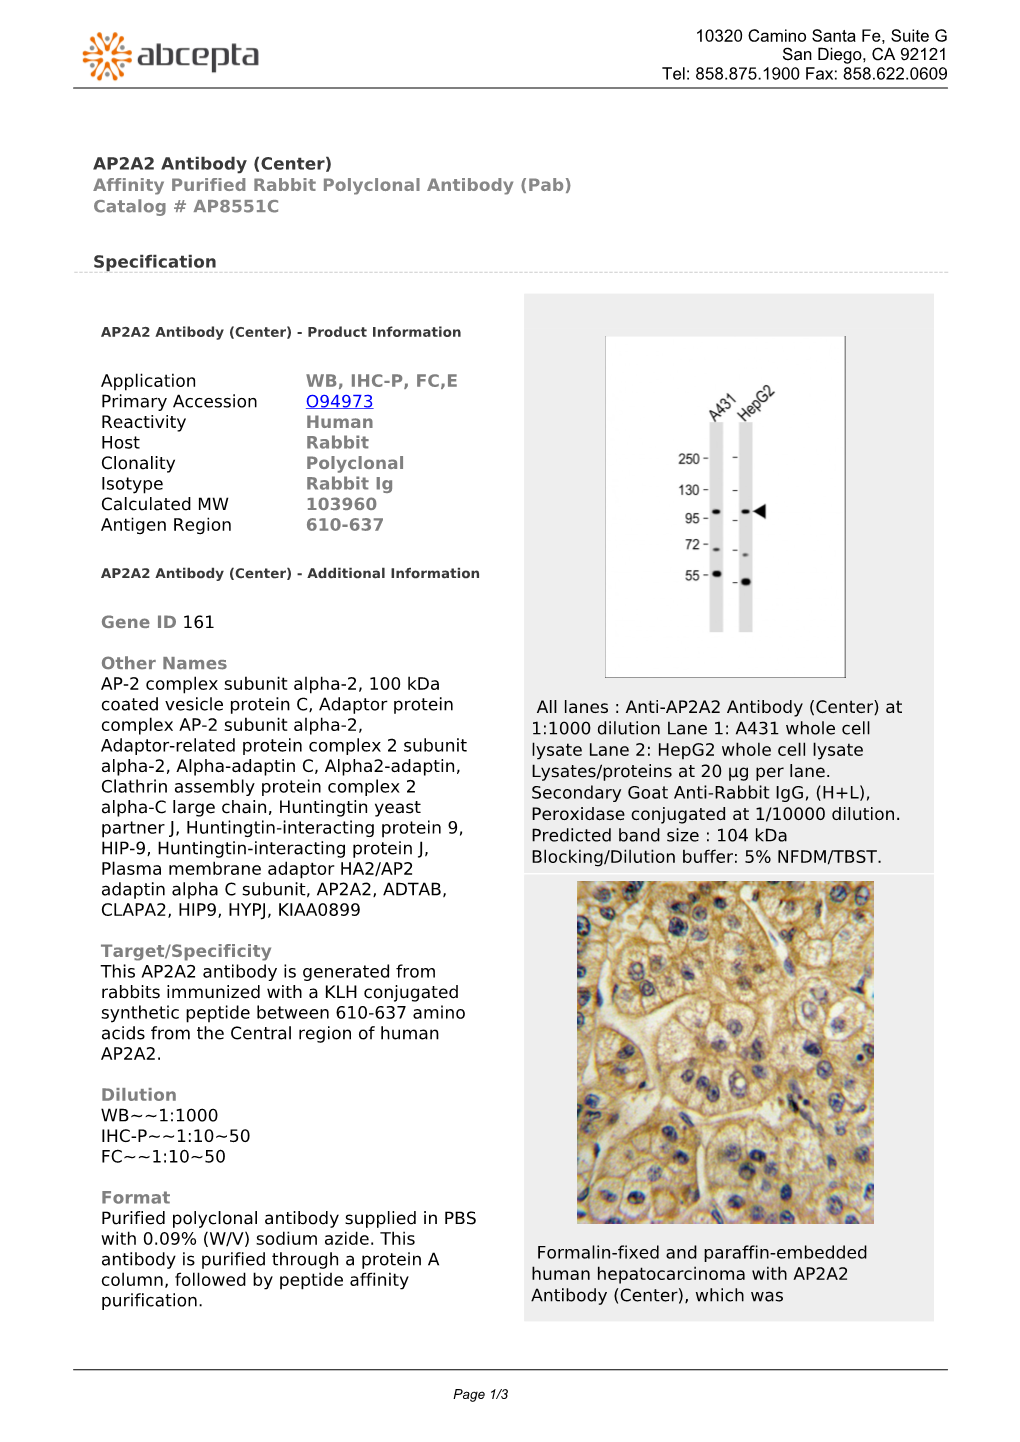 AP2A2 Antibody (Center) Affinity Purified Rabbit Polyclonal Antibody (Pab) Catalog # AP8551C